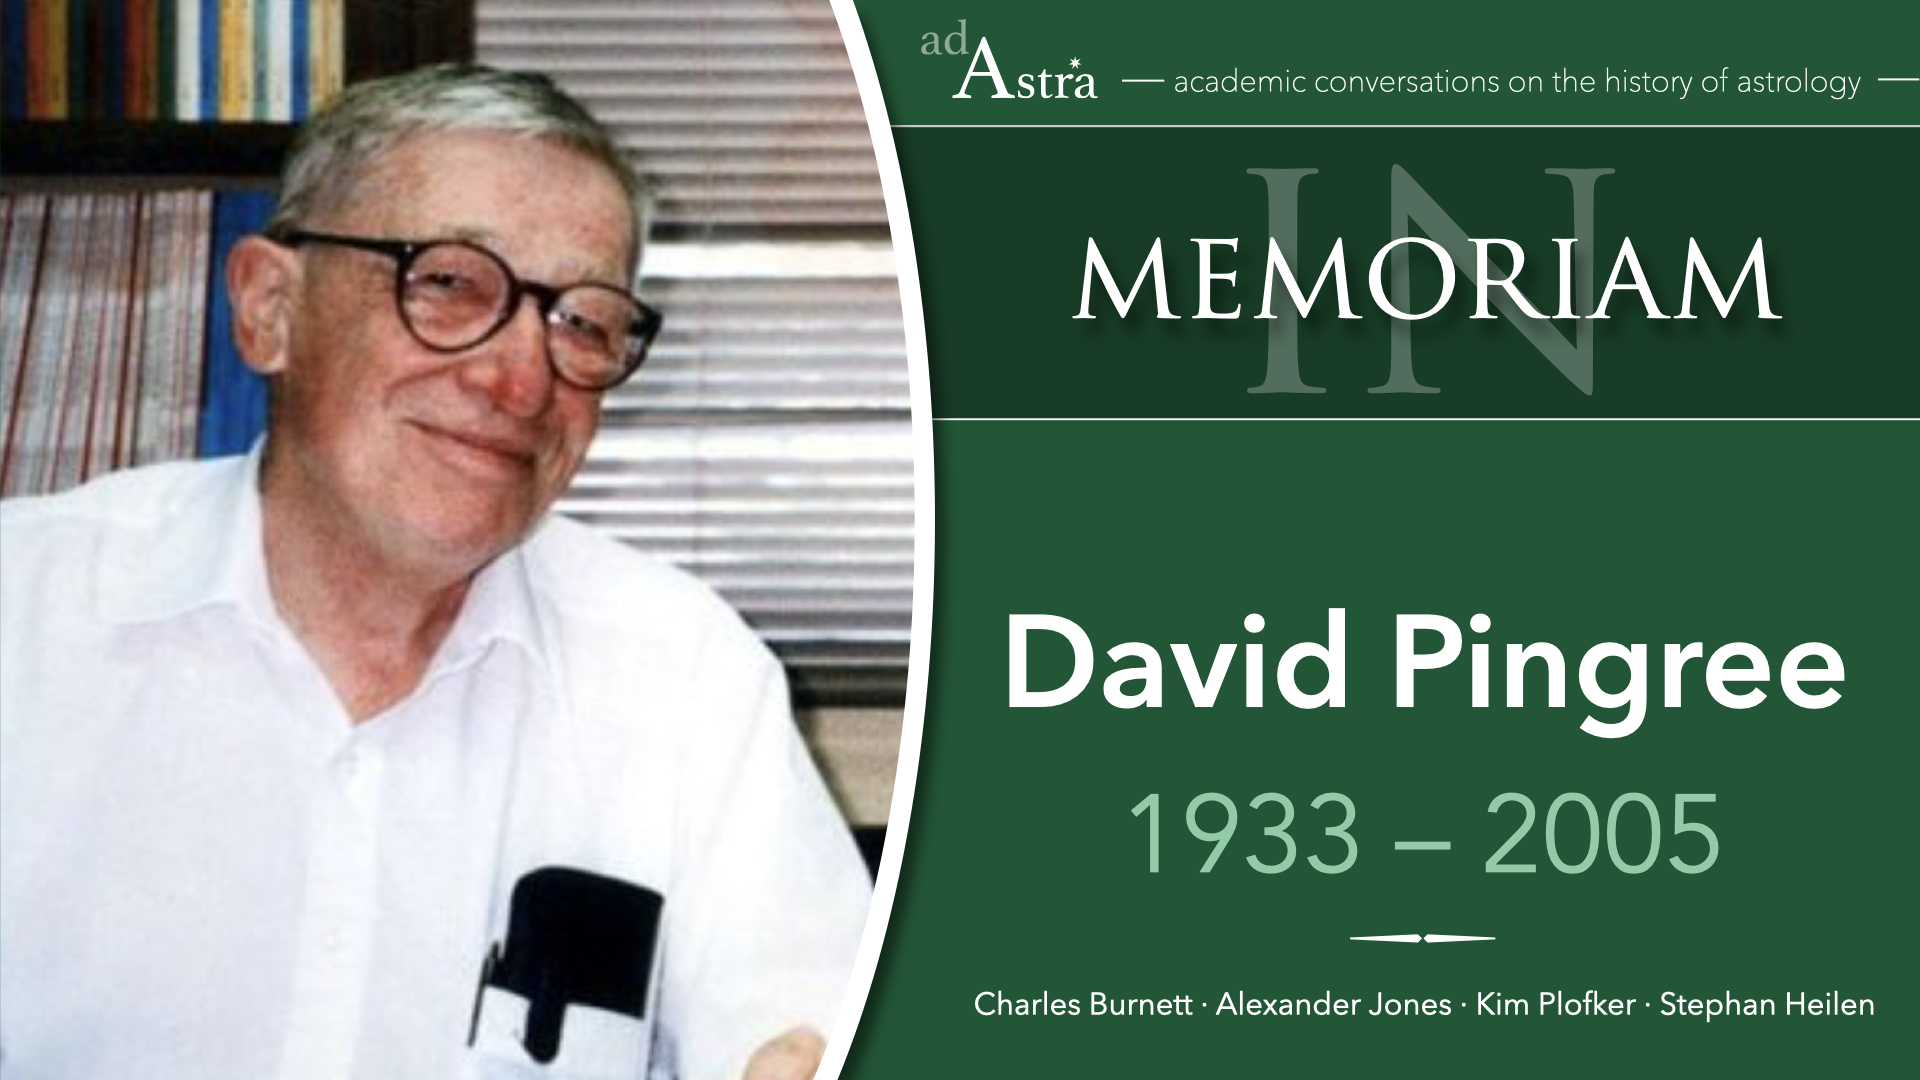 David Pingree (1933-2005): Transmission & Transformation